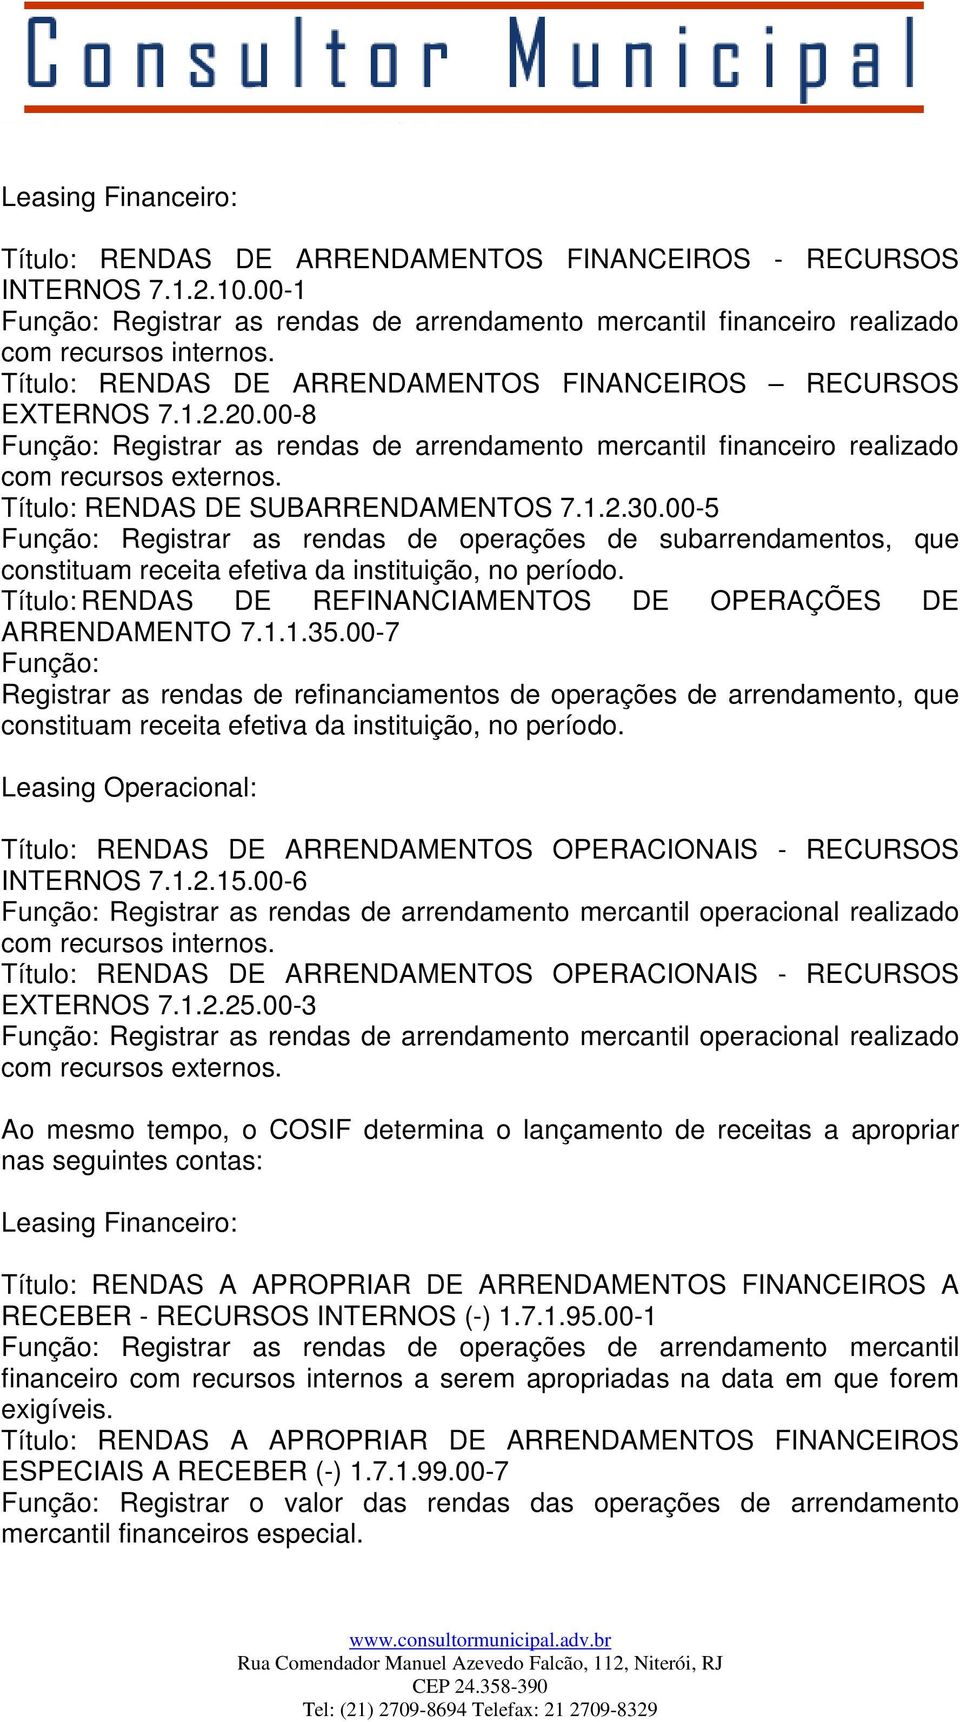 Título: RENDAS DE SUBARRENDAMENTOS 7.1.2.30.00-5 Função: Registrar as rendas de operações de subarrendamentos, que constituam receita efetiva da instituição, no período.